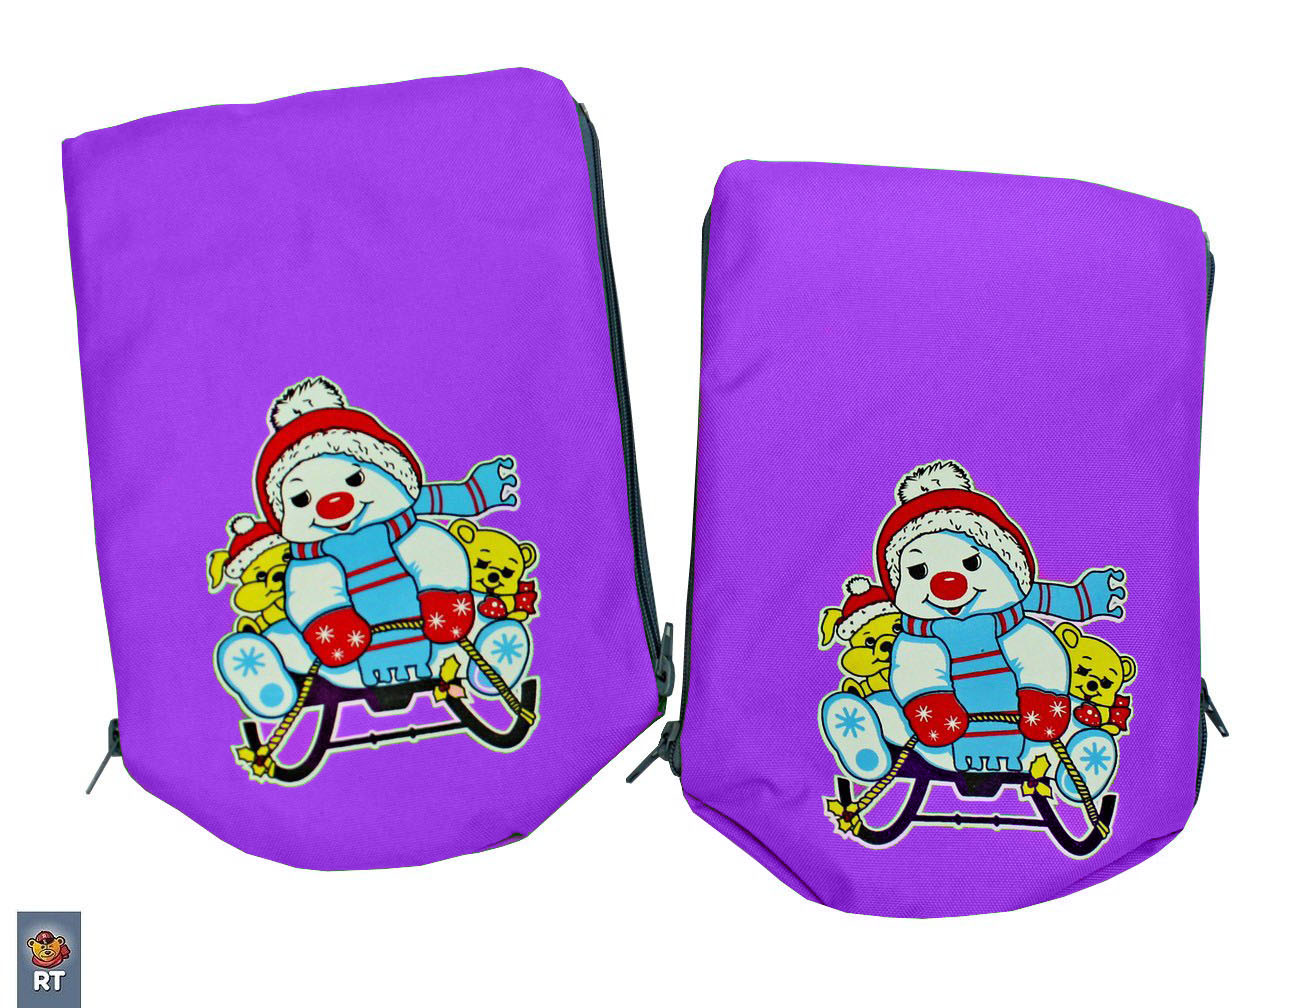 Санки-коляска Snow Galaxy - City-1 - Серый Зайка, цвет фиолетовый, на больших колесах Ева, сумка, варежки  